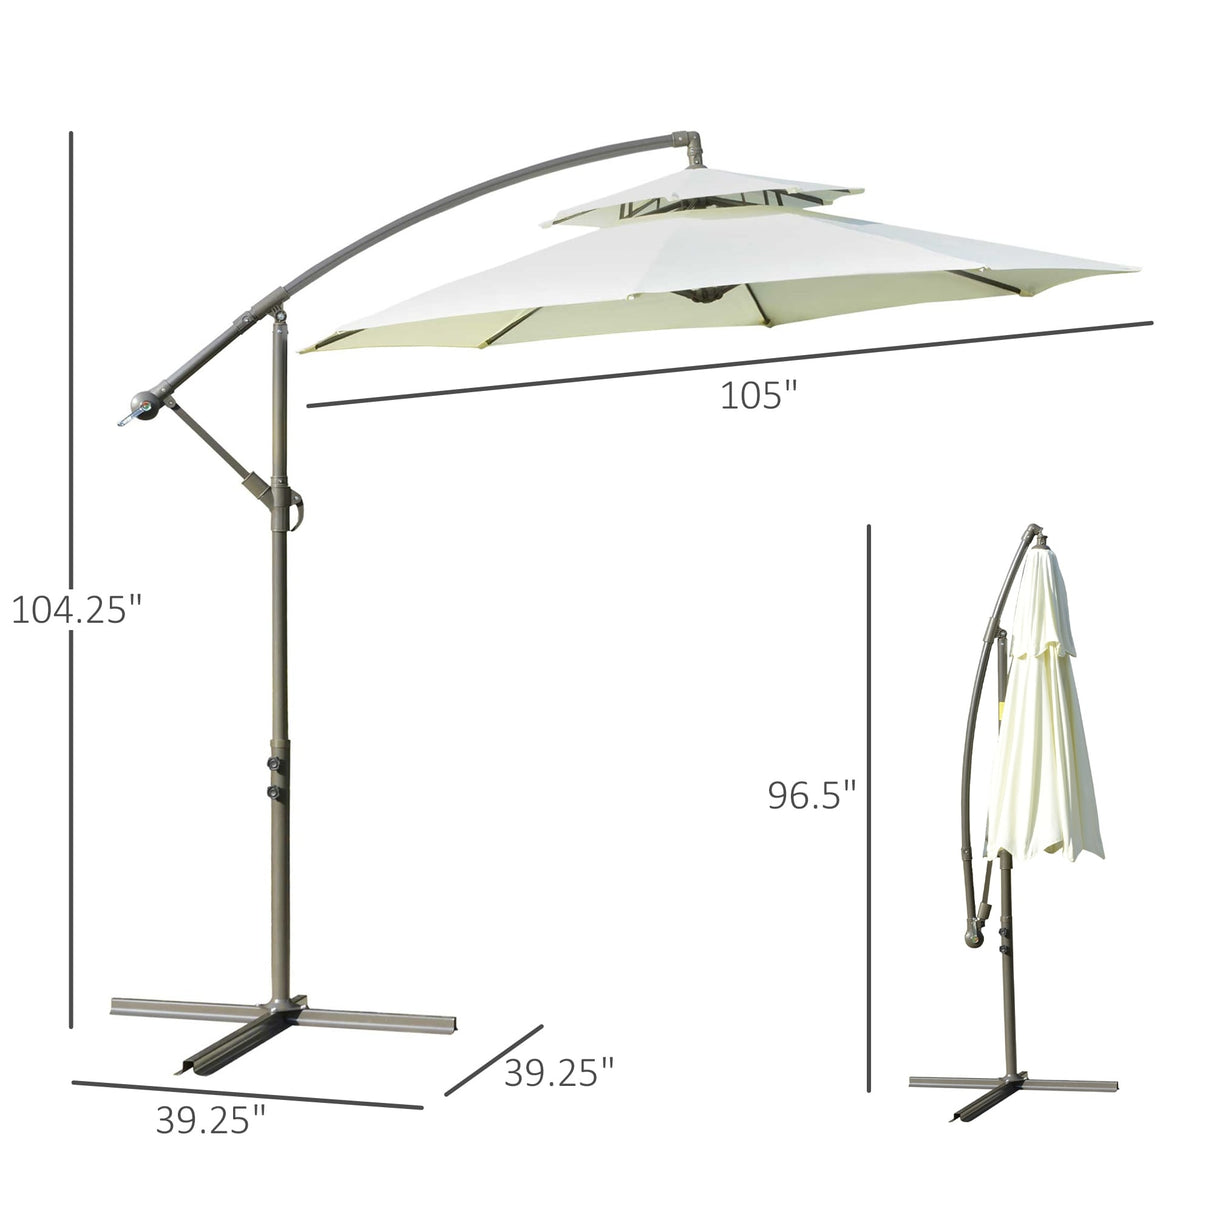 Outsunny 9' 2-Tier Cantilever Umbrella with Crank Handle, Cross Base and 8 Ribs, Garden Patio Offset Umbrella